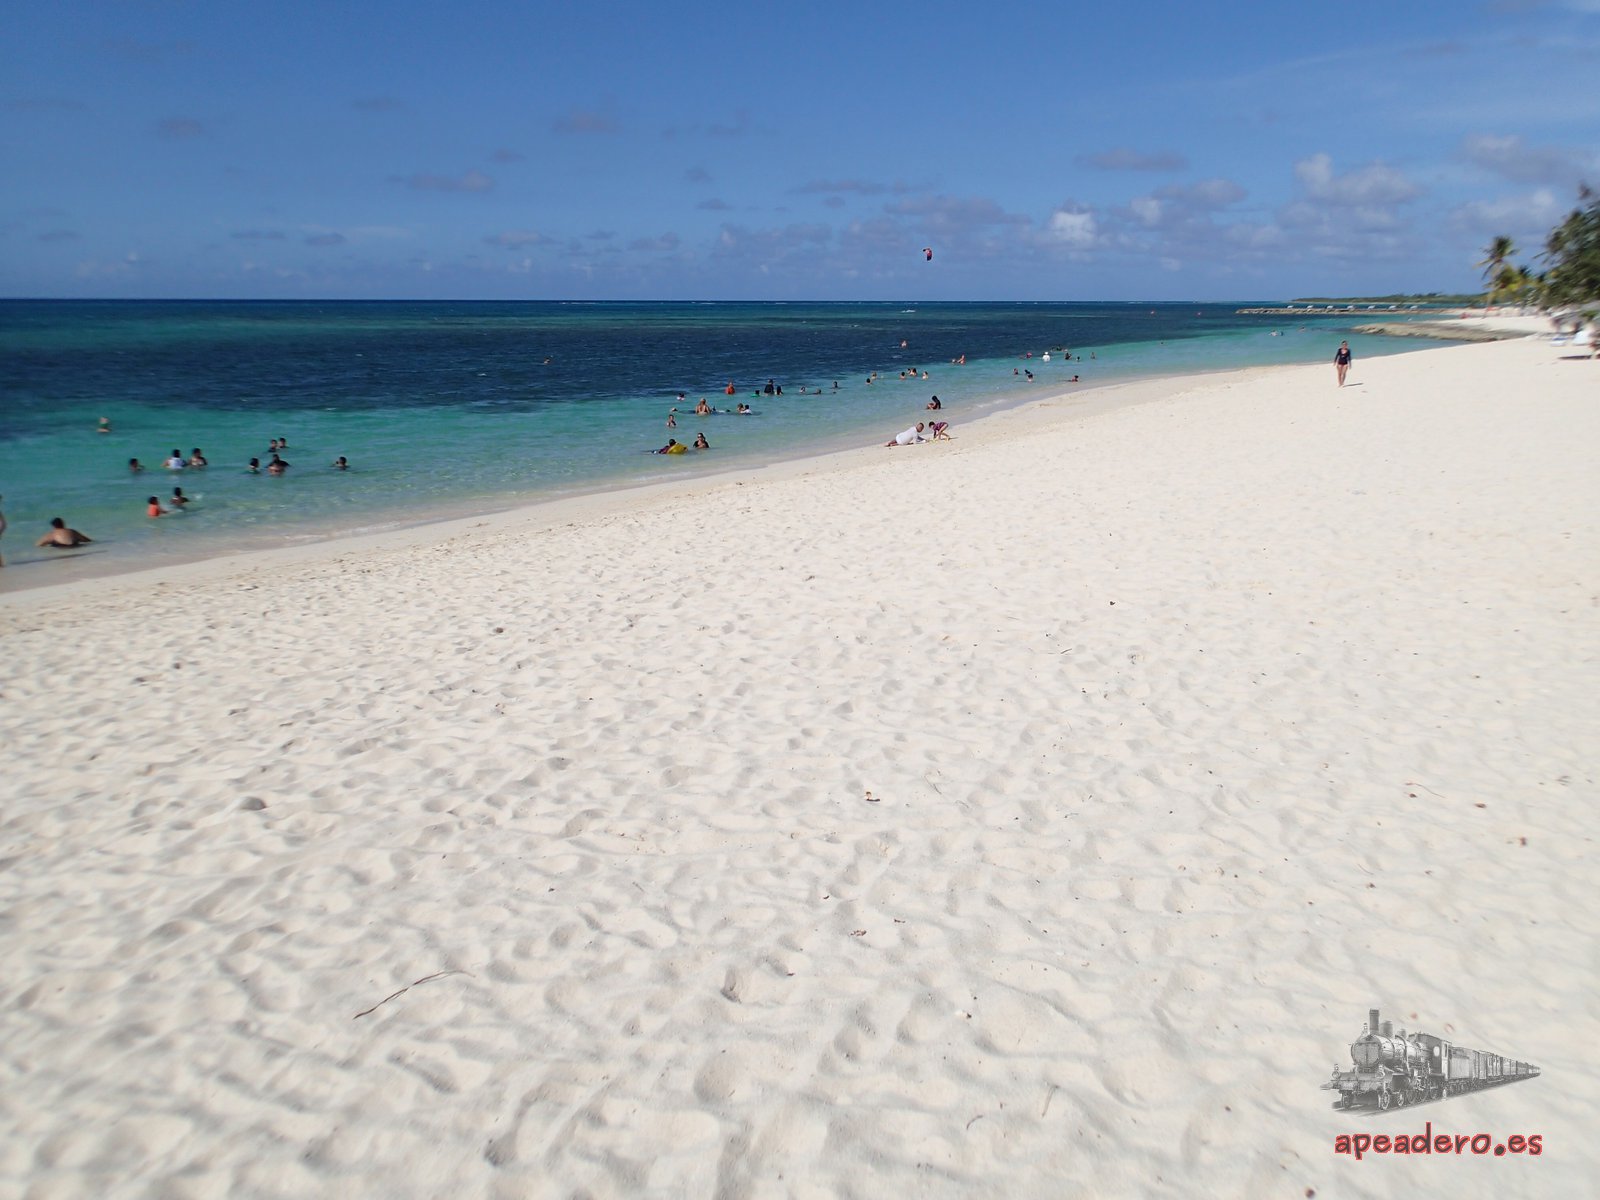 En Guardalavaca la arena es fina y blanca, hay poco turismo y se puede hacer algo de snorkel, aunque no es demasiado espectacular. 